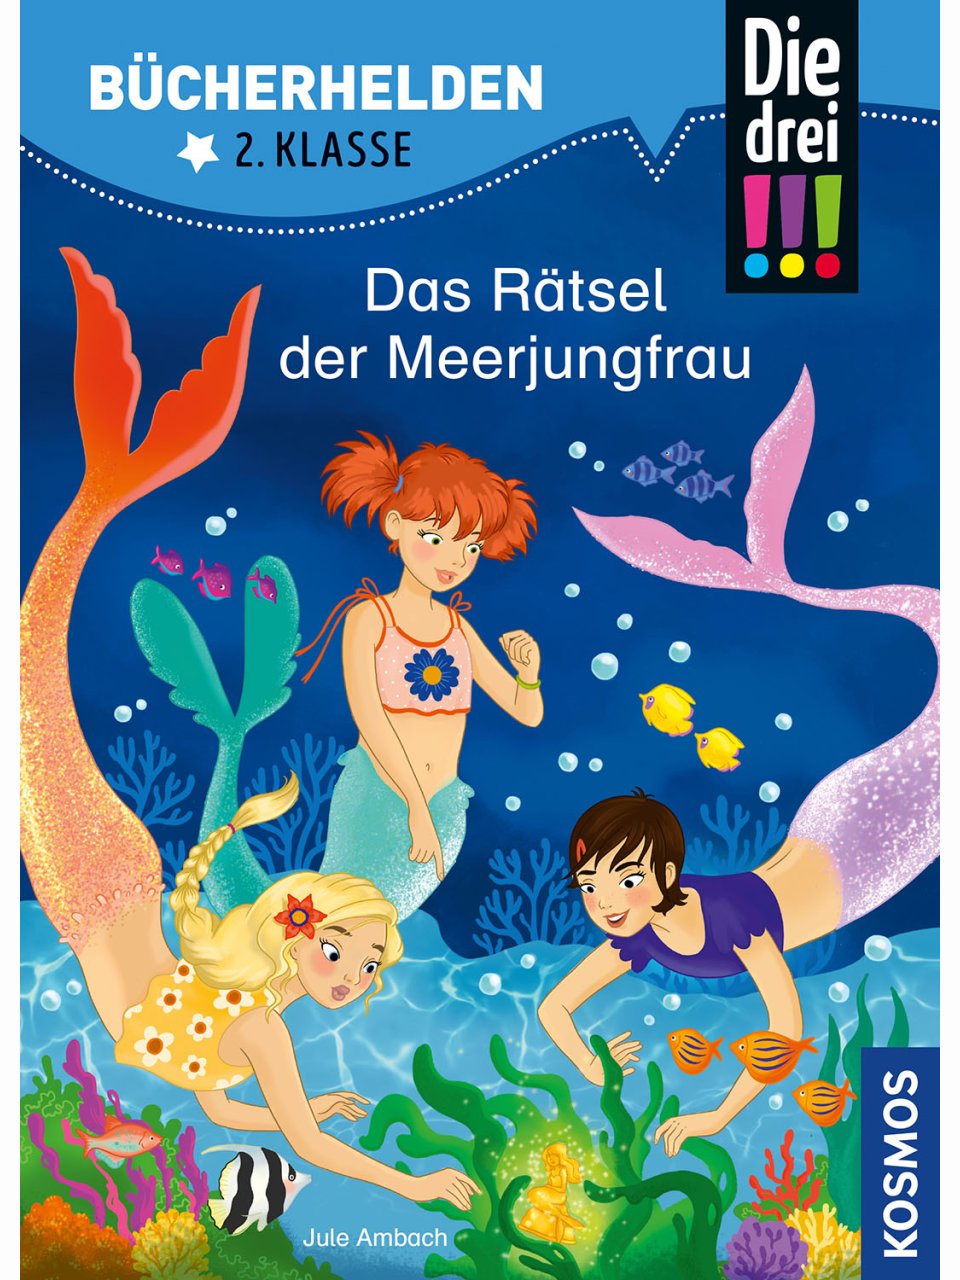 Die drei !!! - Das Rätsel der Meerjungfrau (Bücherhelden 2. Klasse)